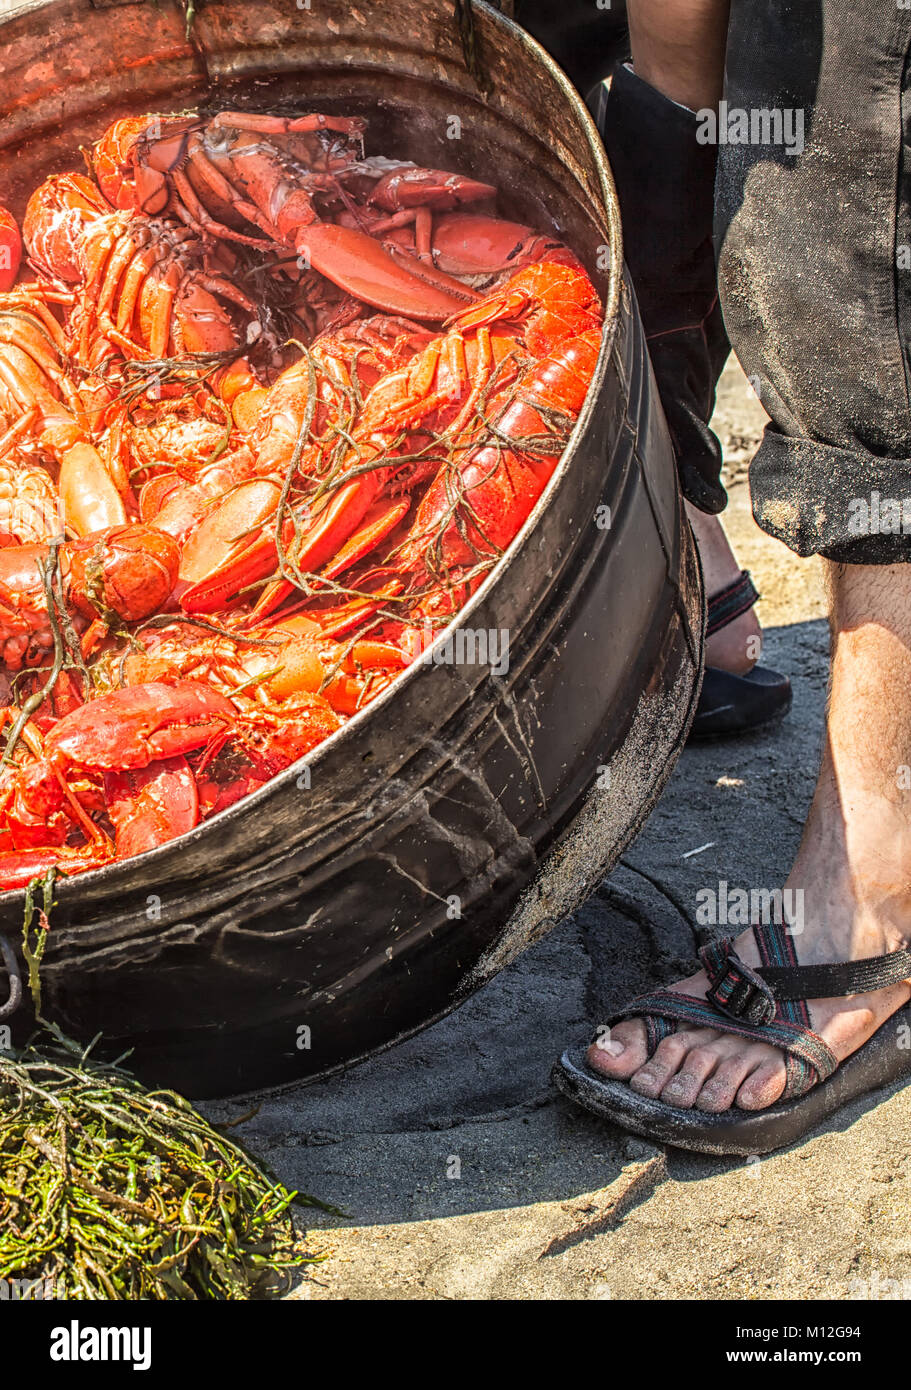 Lobster cuocere su una spiaggia del Maine. Decine di aragoste fresche cotte a vapore in una grande pentola su un fuoco di legno e girata su un letto di alghe. Estate tradizione. Foto Stock